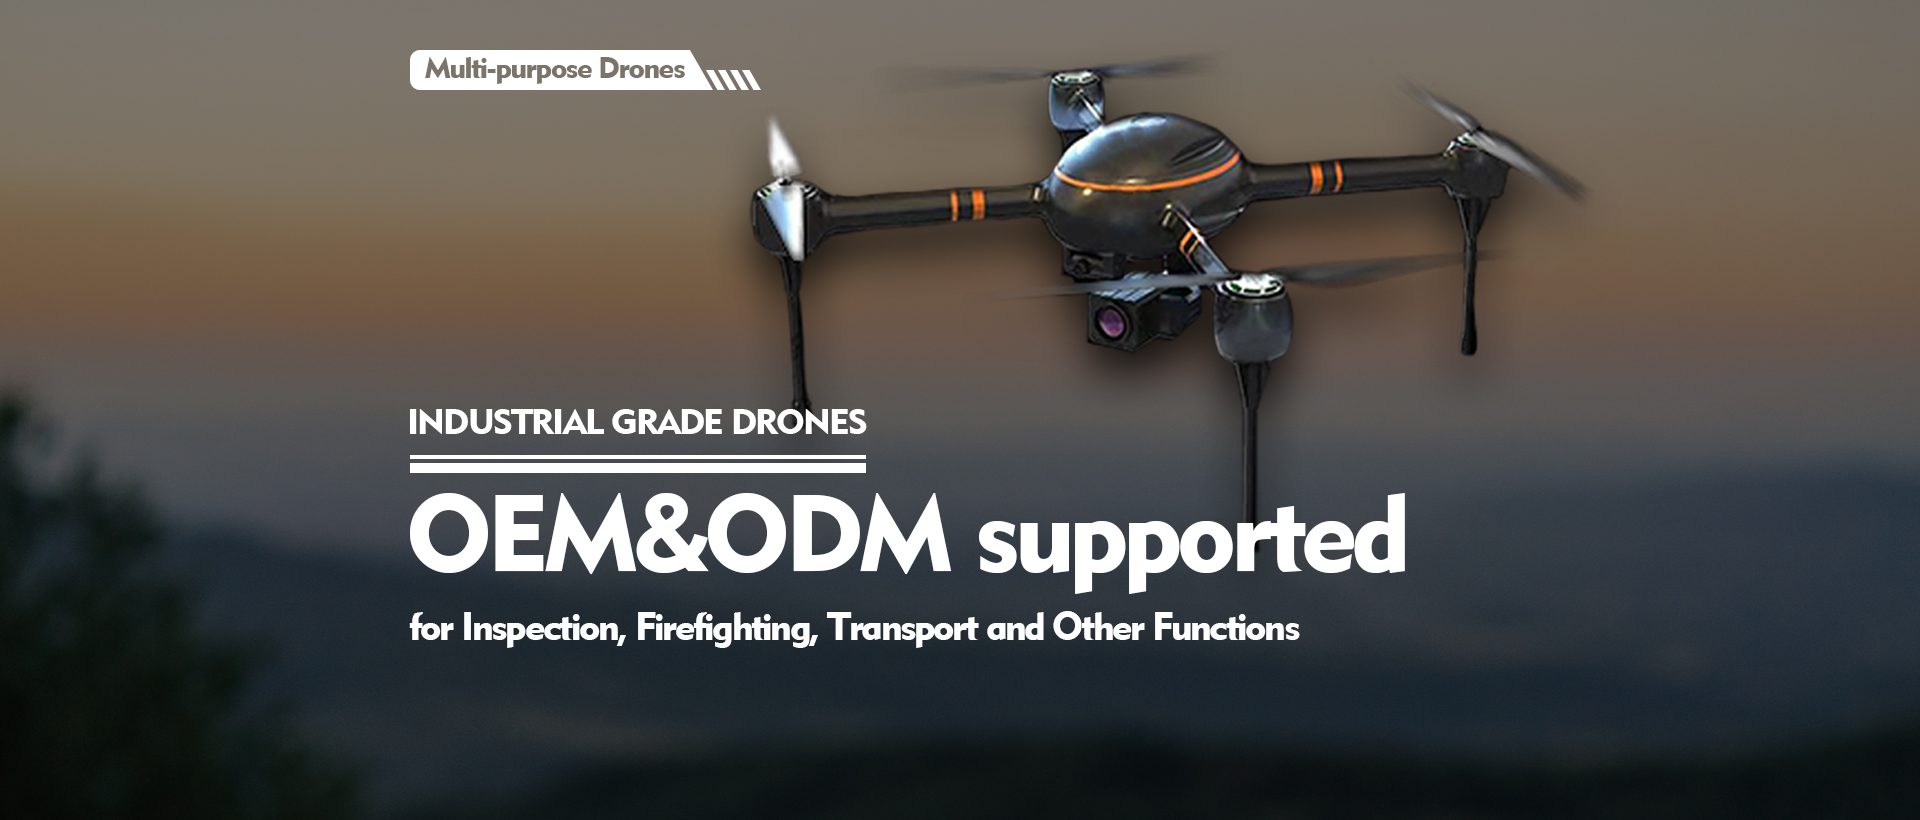 Industrial grade drones